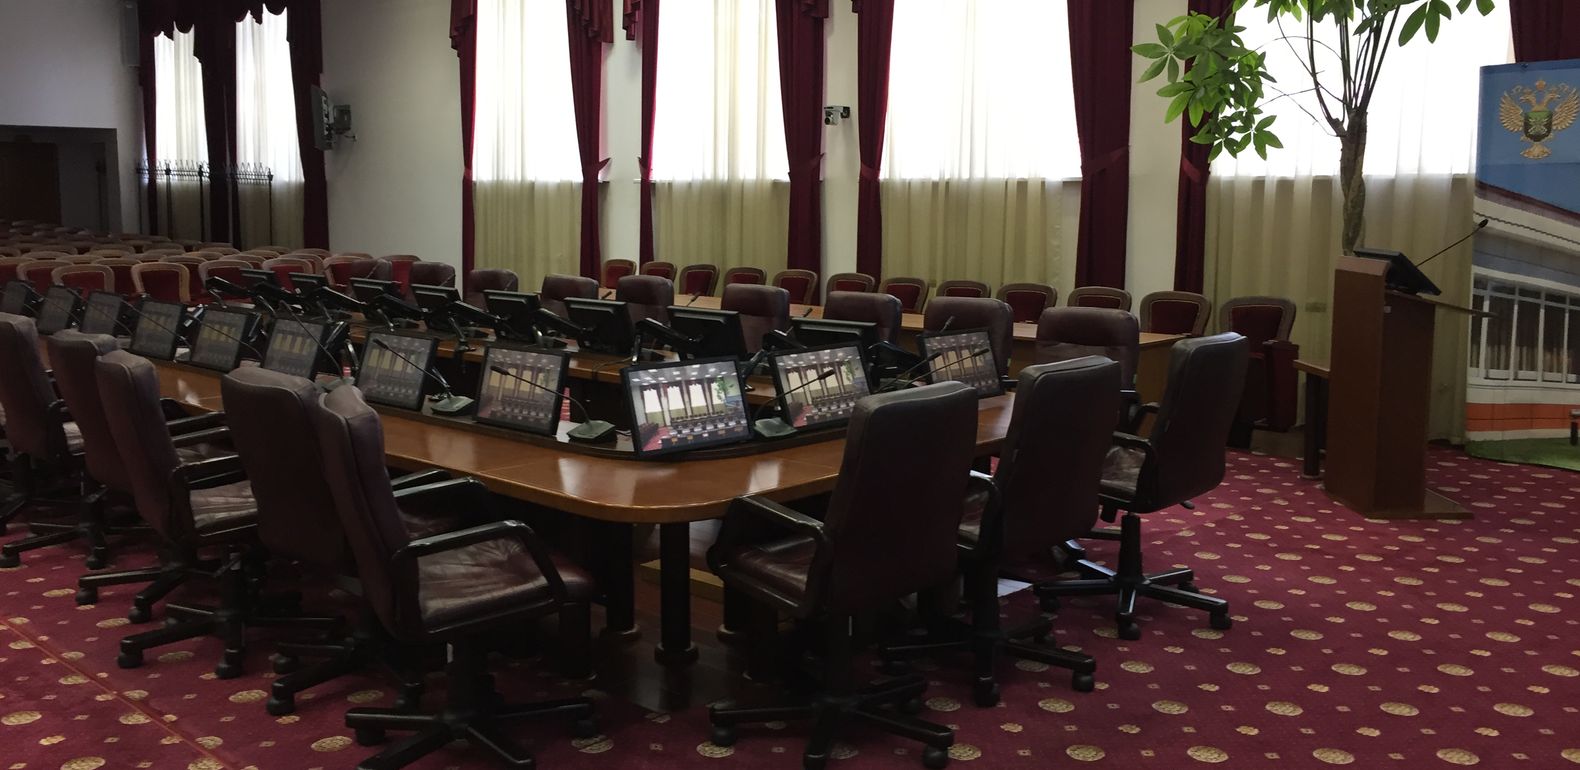 Модернизация конгресс-зала и переговорных комнат для ФГБУ "ВНИИКР"